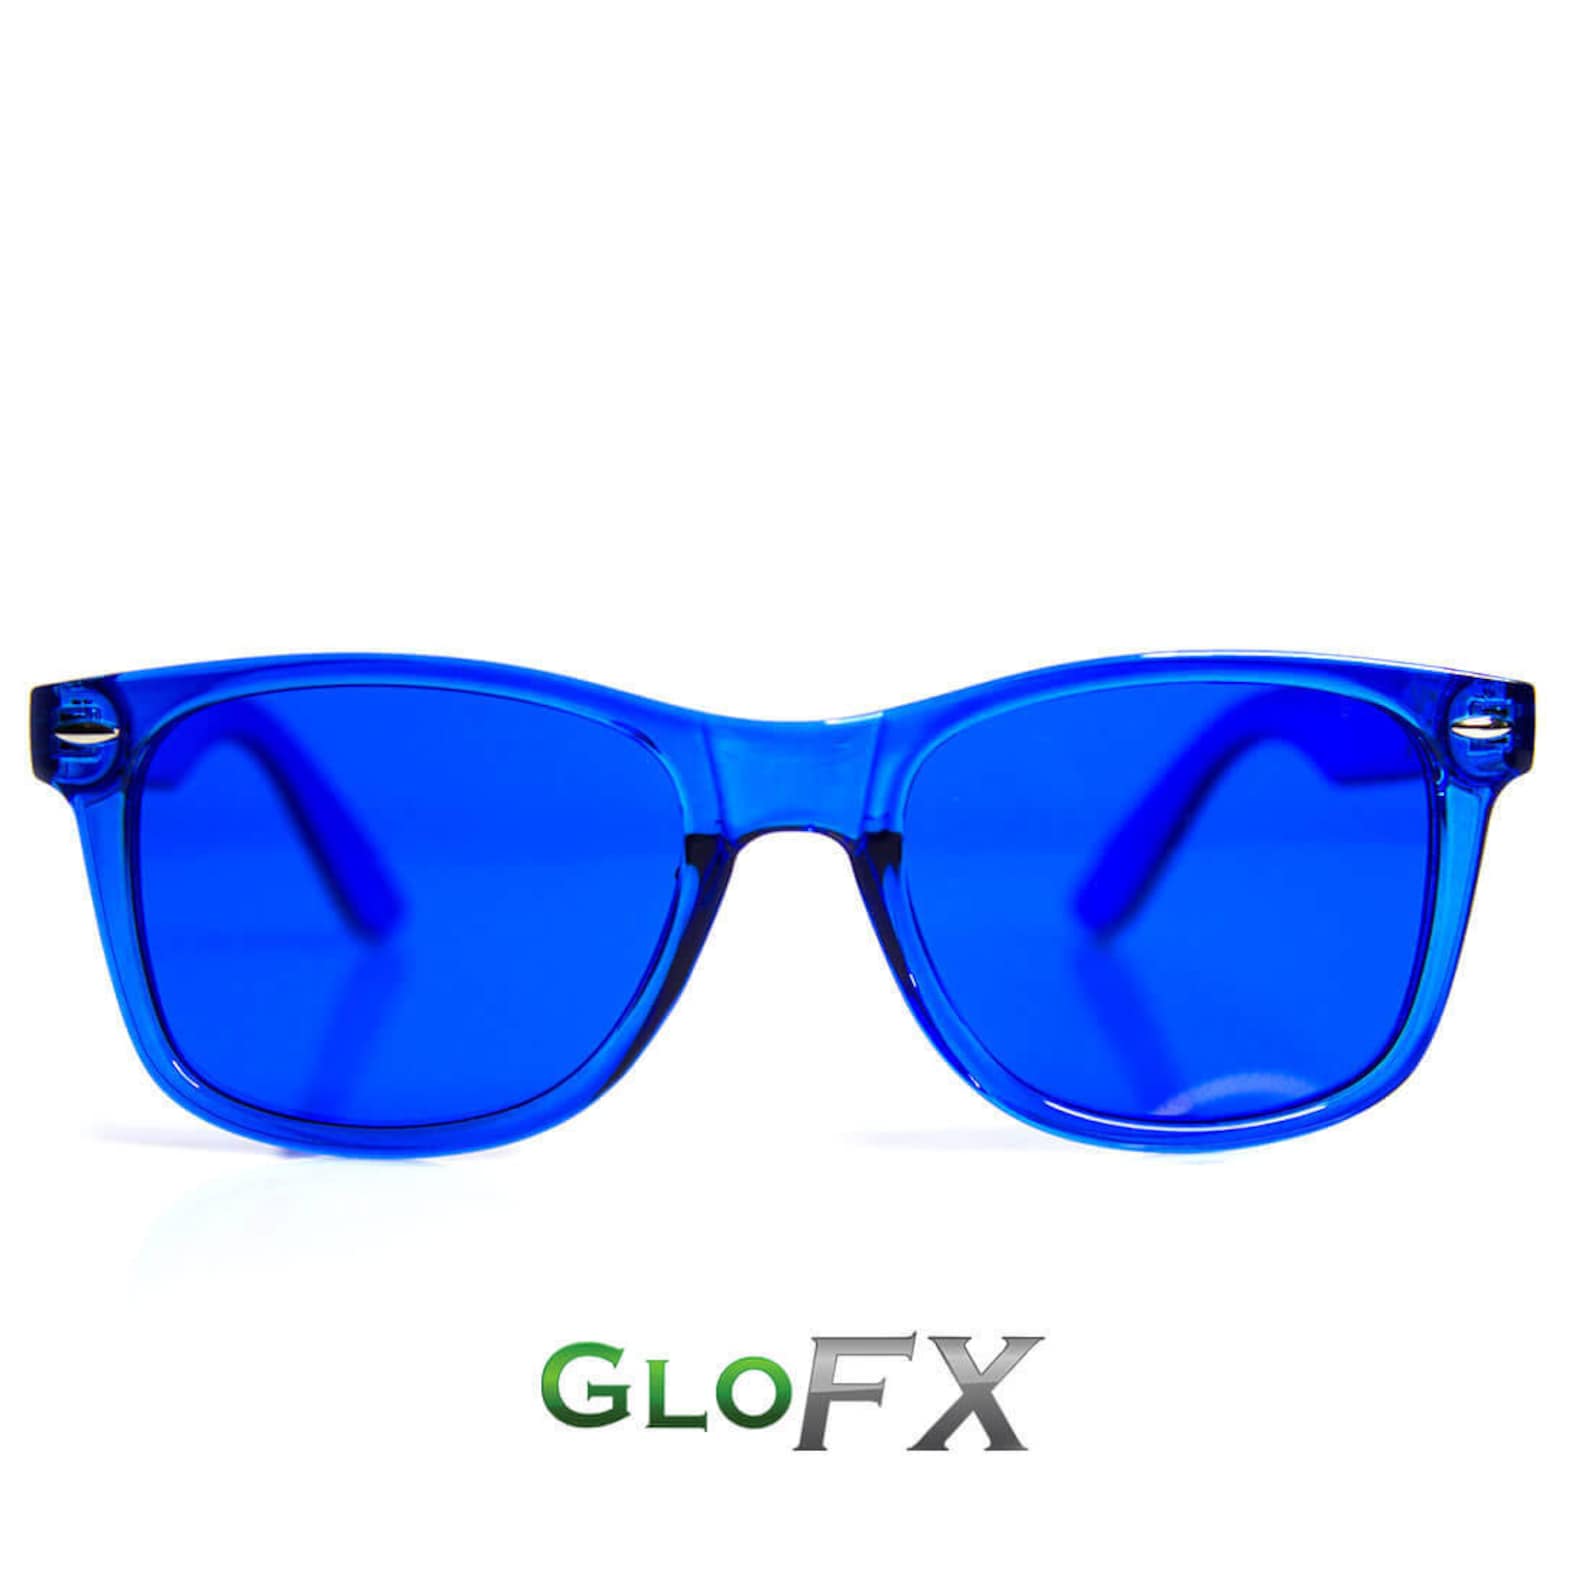 Очки солнцезащитные мужские синие. Arizona очки синие мужские. GLOFX очки. Очки солнцезащитные 7275 Blue. Солнечные очки синие.